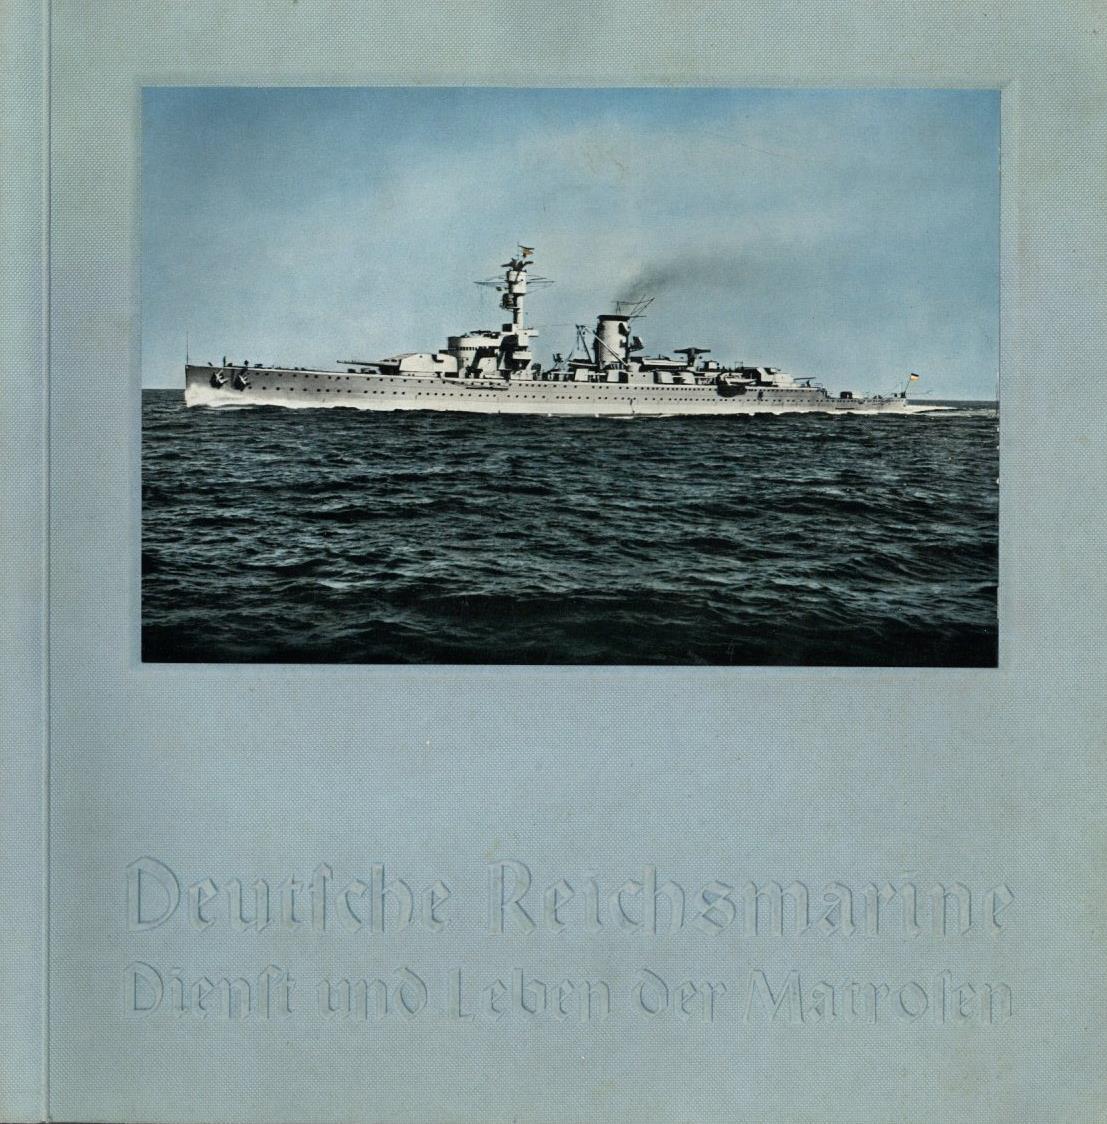 Sammelbild-Album Deutsche Reichsmarine Dienst Und Leben Der Matrosen Max Burchartz 1934 Kompl. II - Oorlog 1939-45